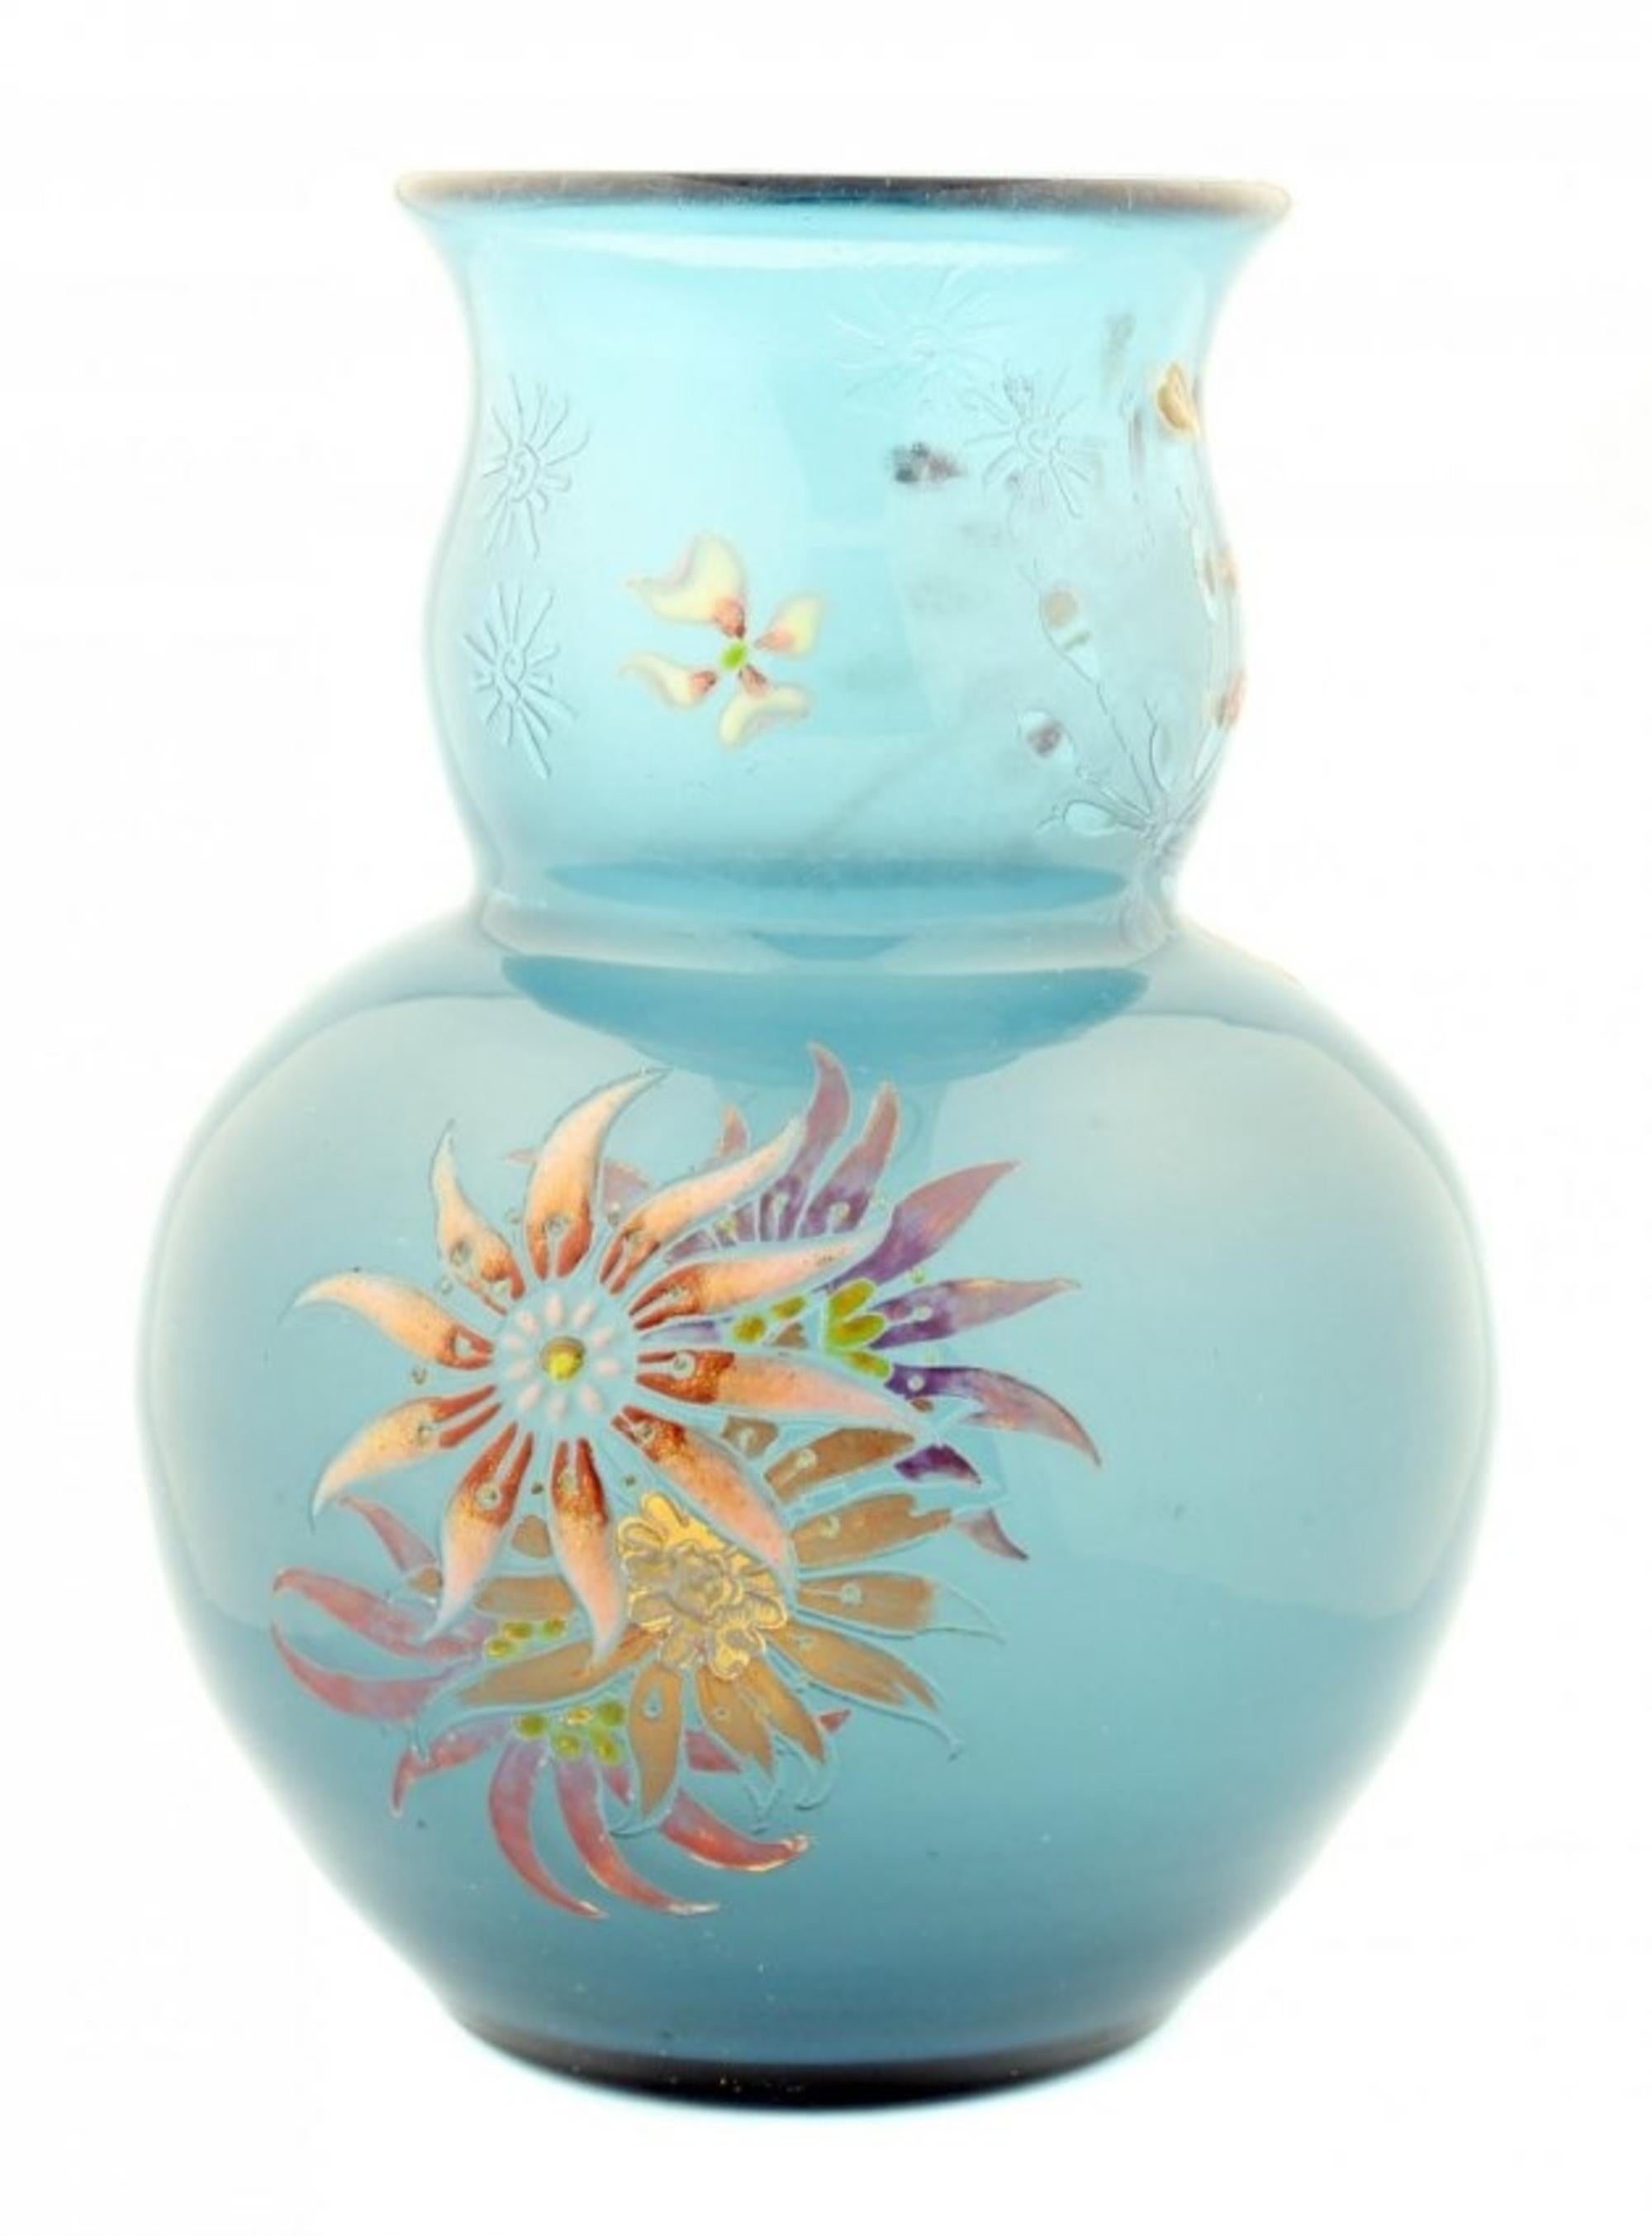 Emile Galle Cameo Glass Vase, Signed Gallé Modé Le Décor Déposés In Good Condition For Sale In West Palm Beach, FL